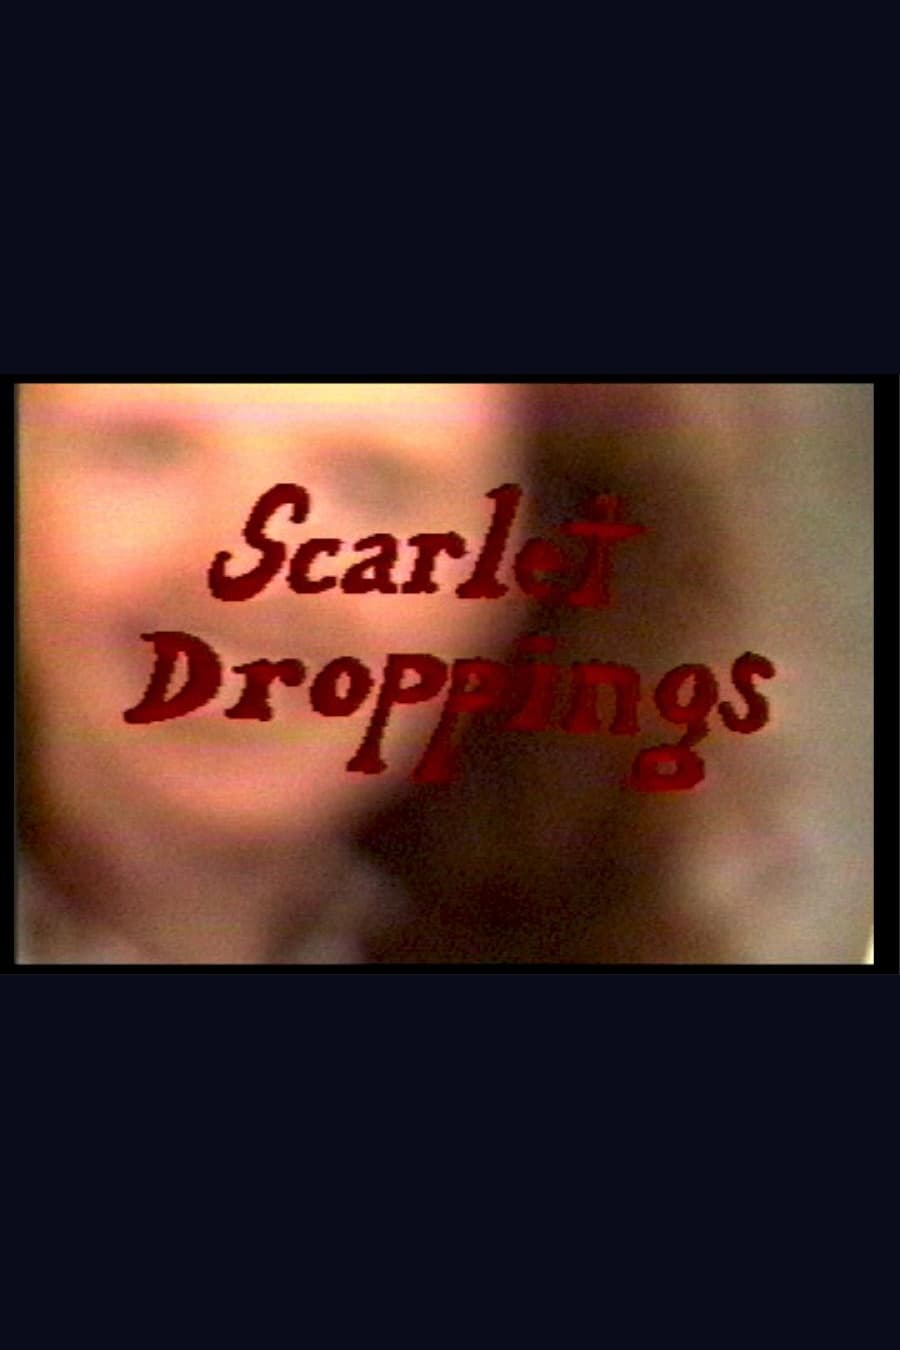 Scarlet Droppings (1991)